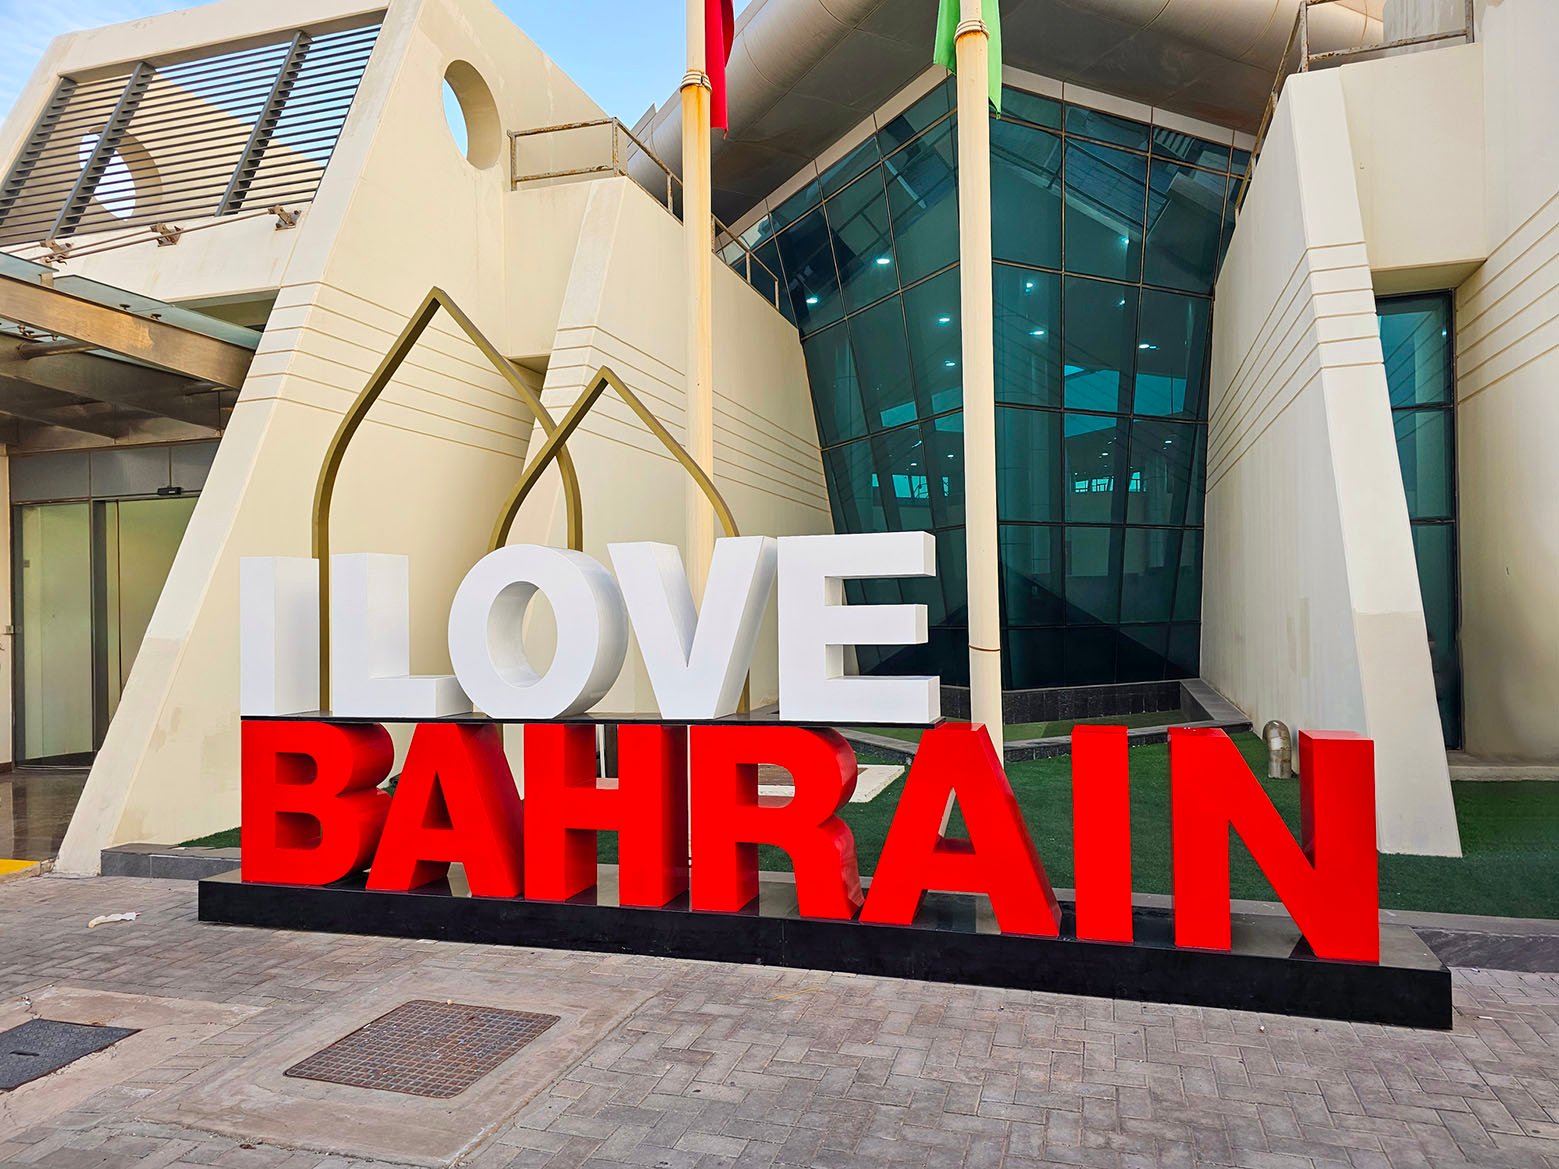 The I Love Bahrain welcome text sign at the Khalifa Bin Salman cruise Port in Mina Salman-Manama, Bahrain.